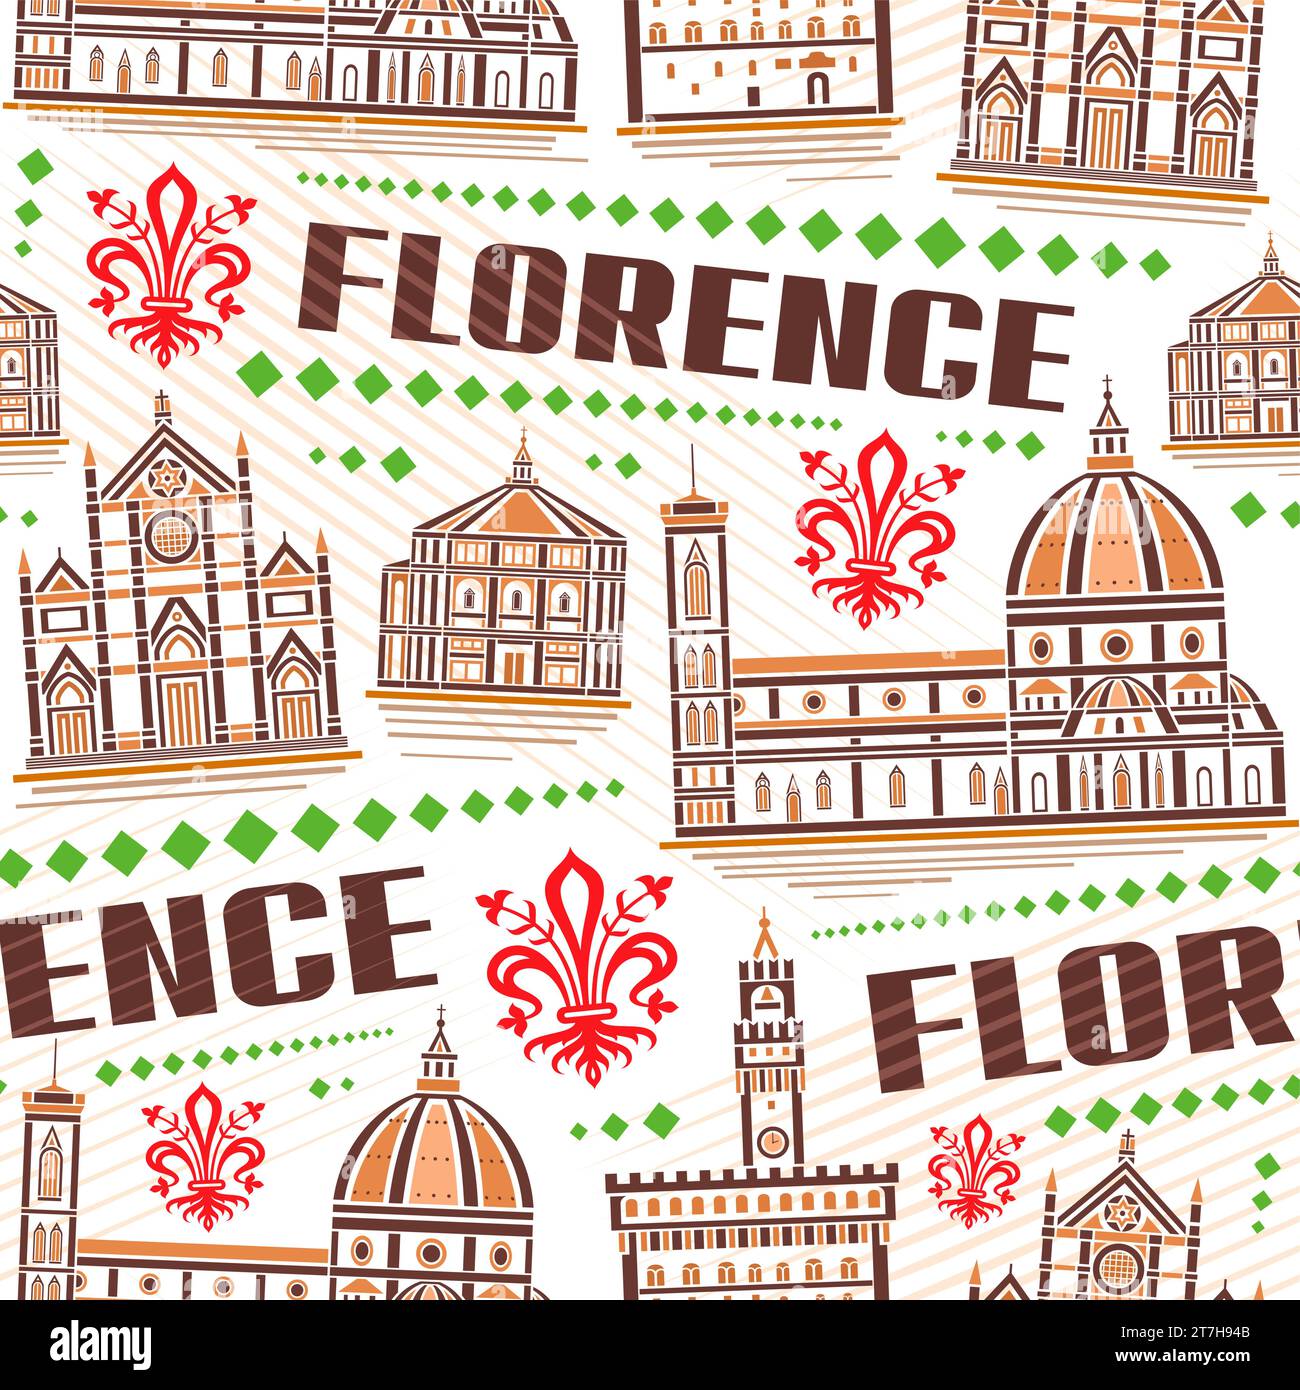 Vektor Florenz nahtloses Muster, wiederholen Hintergrund mit Umrissillustration der berühmten florenz Stadtlandschaft auf weißem Hintergrund für Bettwäsche, dekorieren Stock Vektor